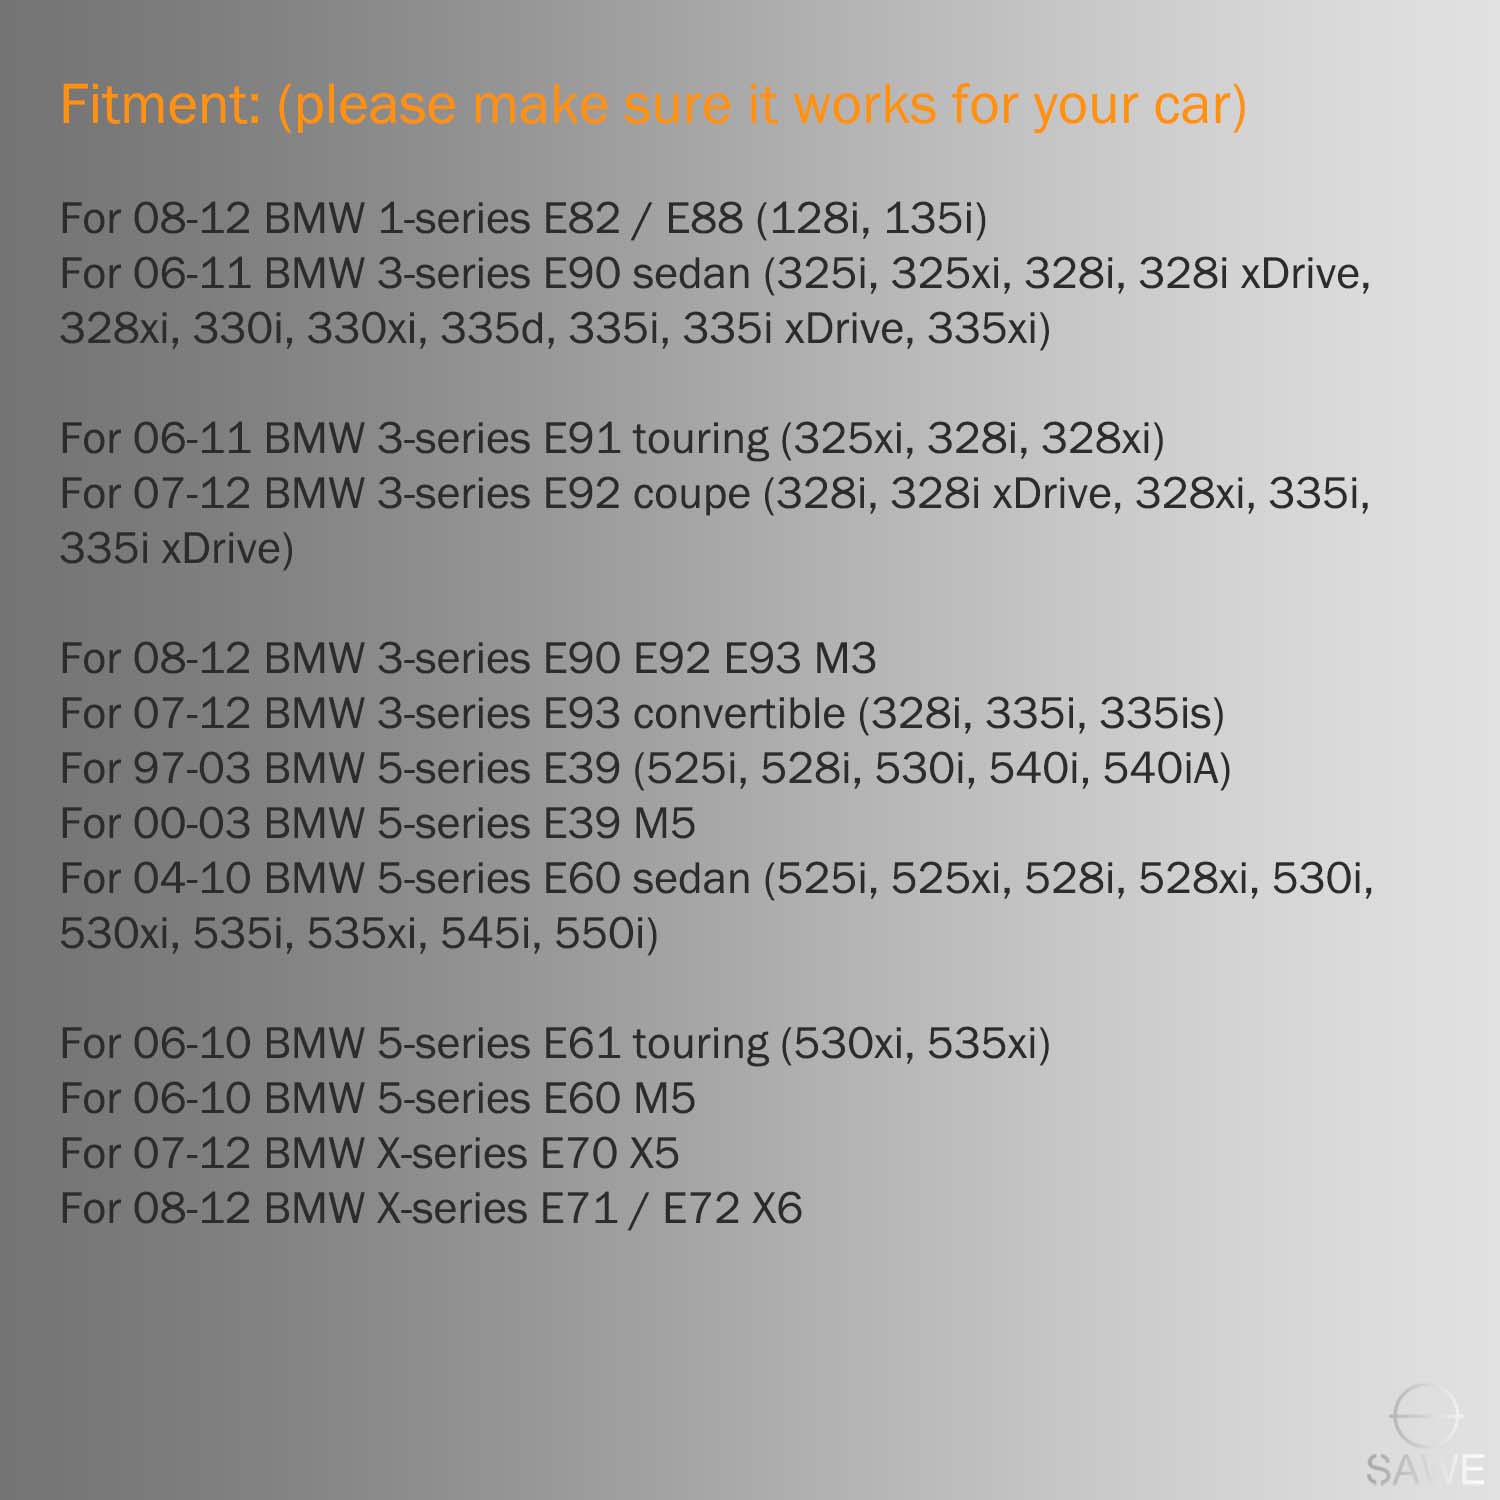 Error Free LED License Plate Light Housing For BMW 135i 325i 328i 335i 528i 535i X6 X5 - White